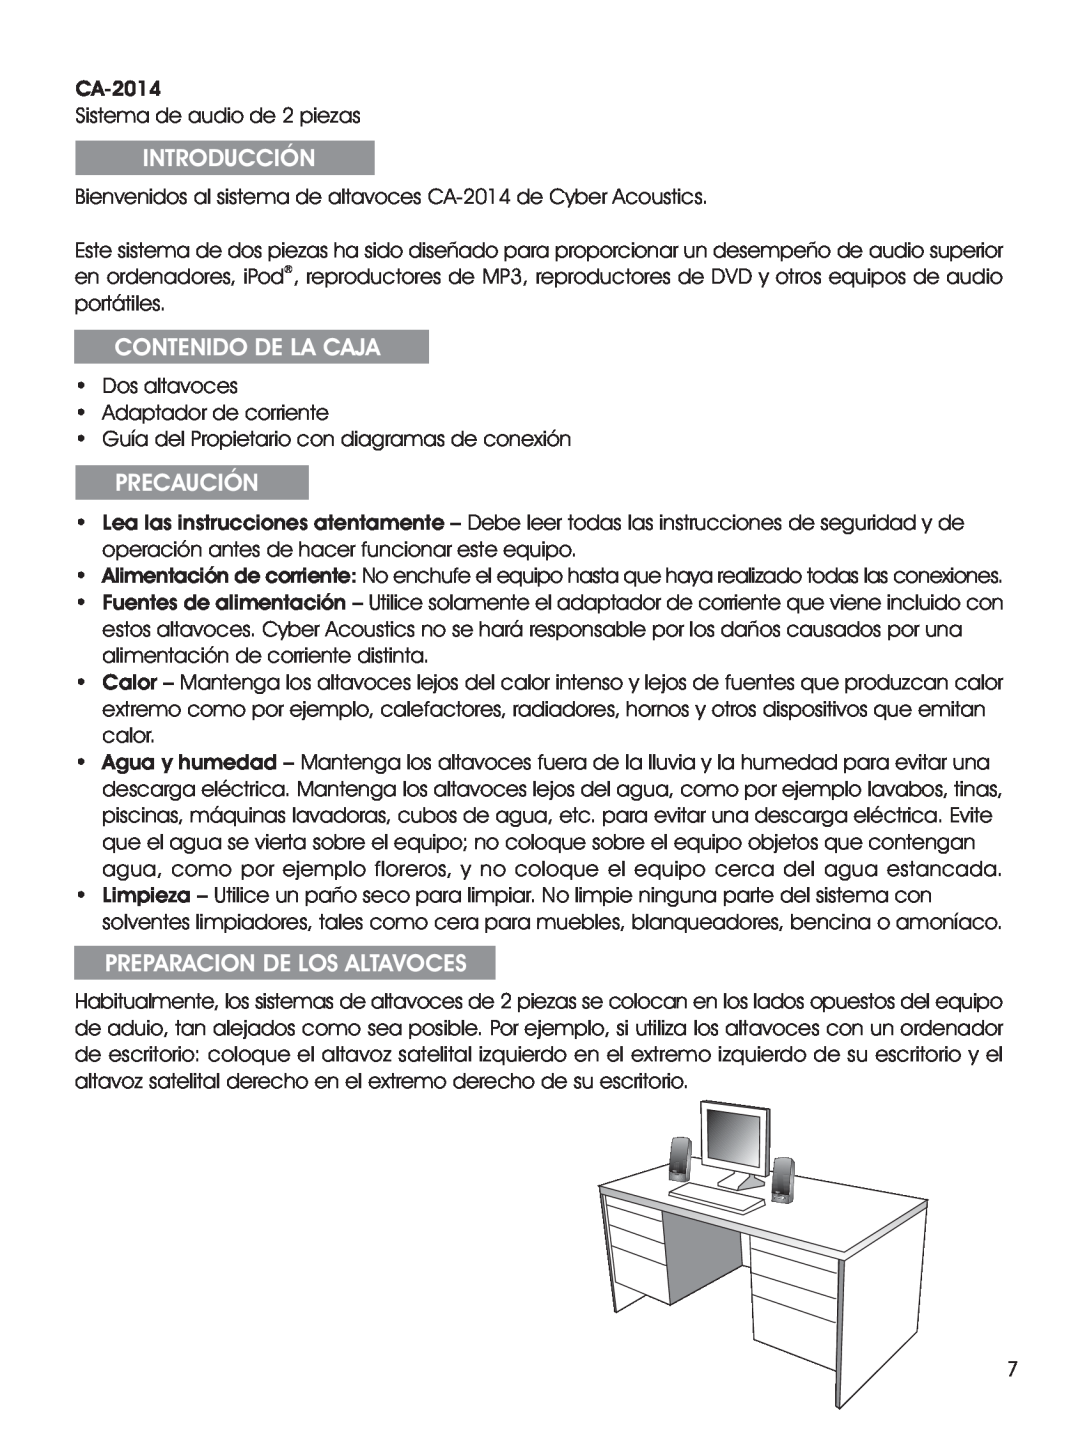 Cyber Acoustics CA-2014 manual Introducción, Contenido De La Caja, Precaución, Preparacion De Los Altavoces 